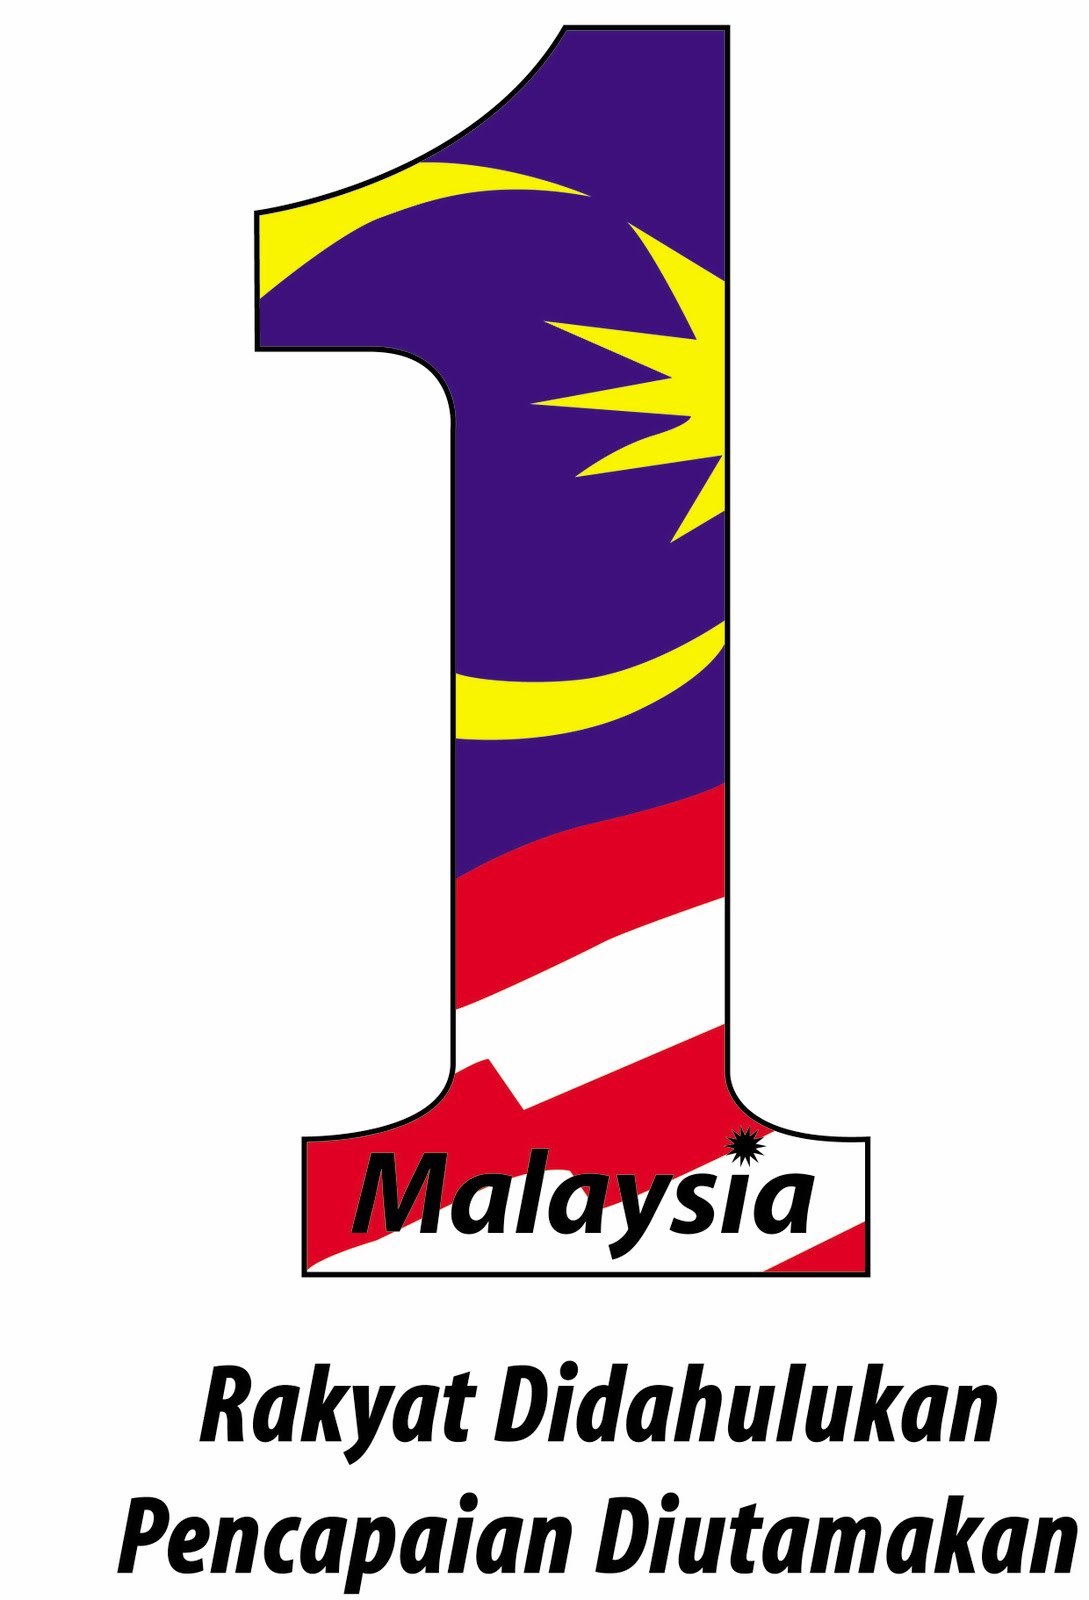 MyInfo Malaysia: Logo dan Tema Hari Kebangsaan Malaysia Ke-54 Tahun 2011